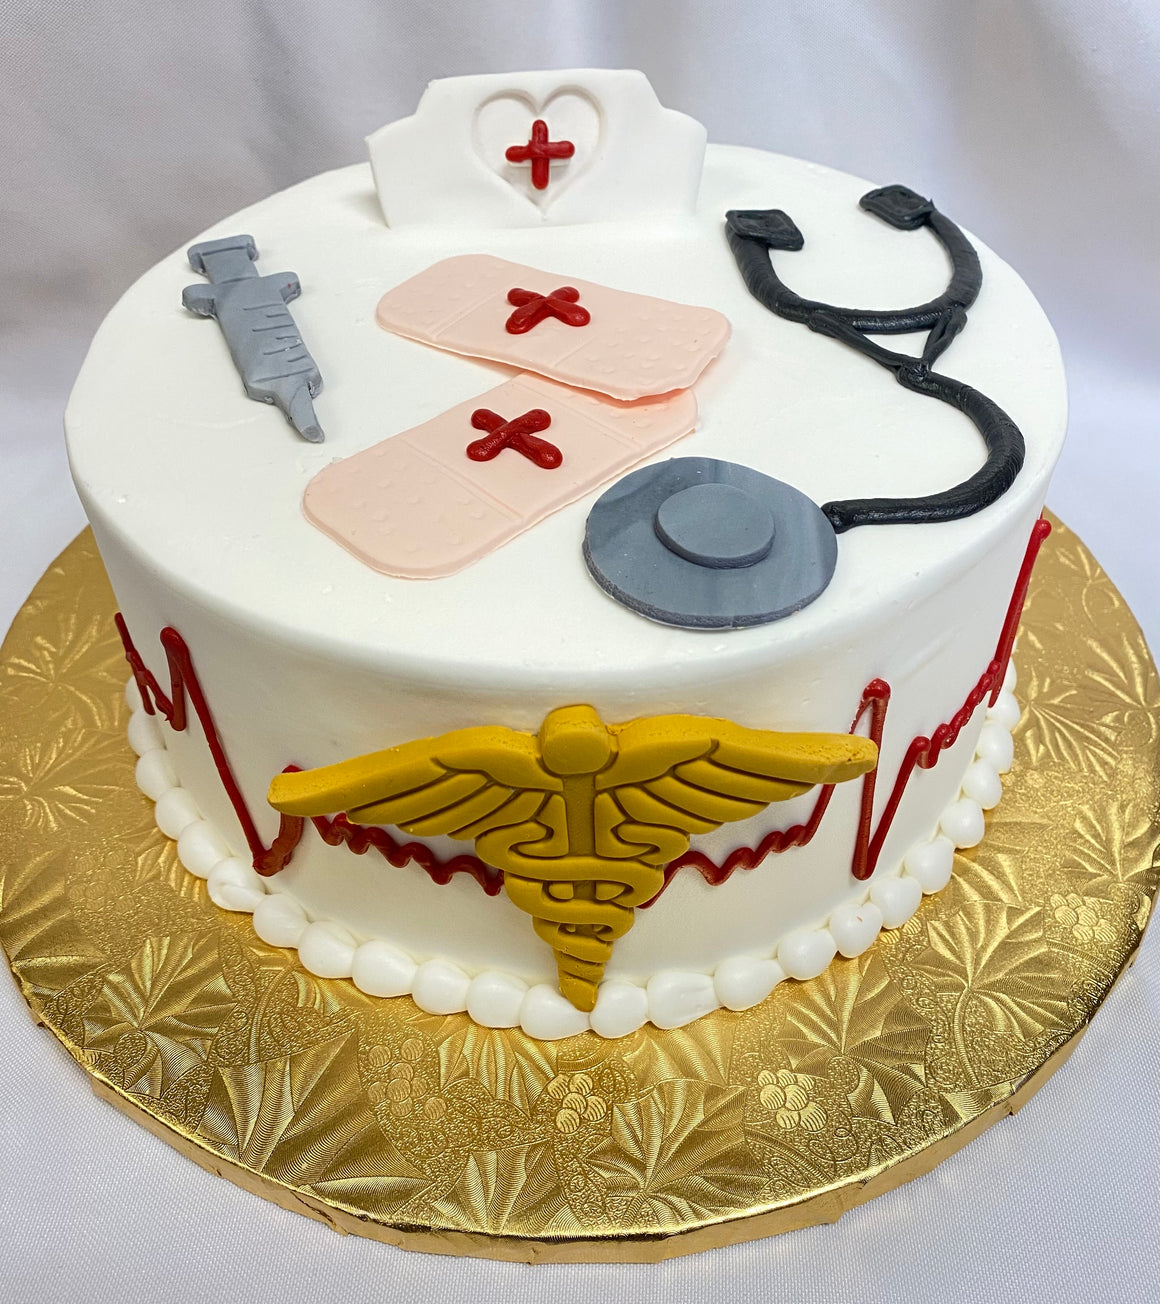 Nurse Theme Cake Design 8" Round Cake